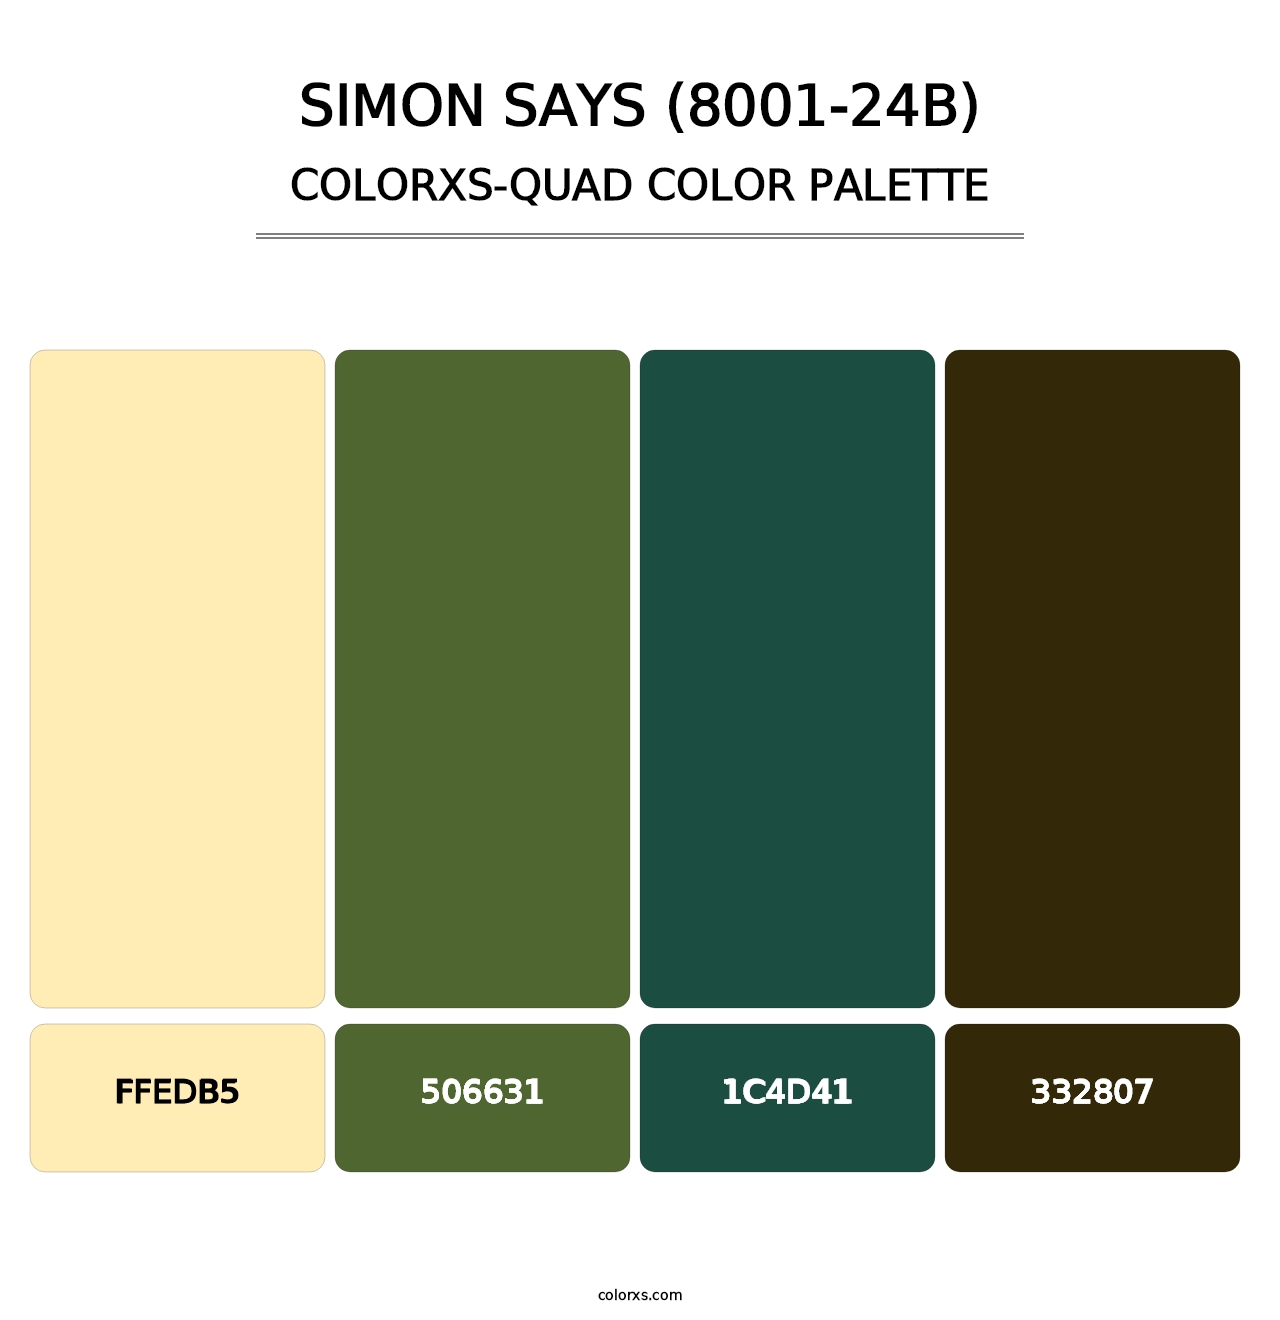 Simon Says (8001-24B) - Colorxs Quad Palette